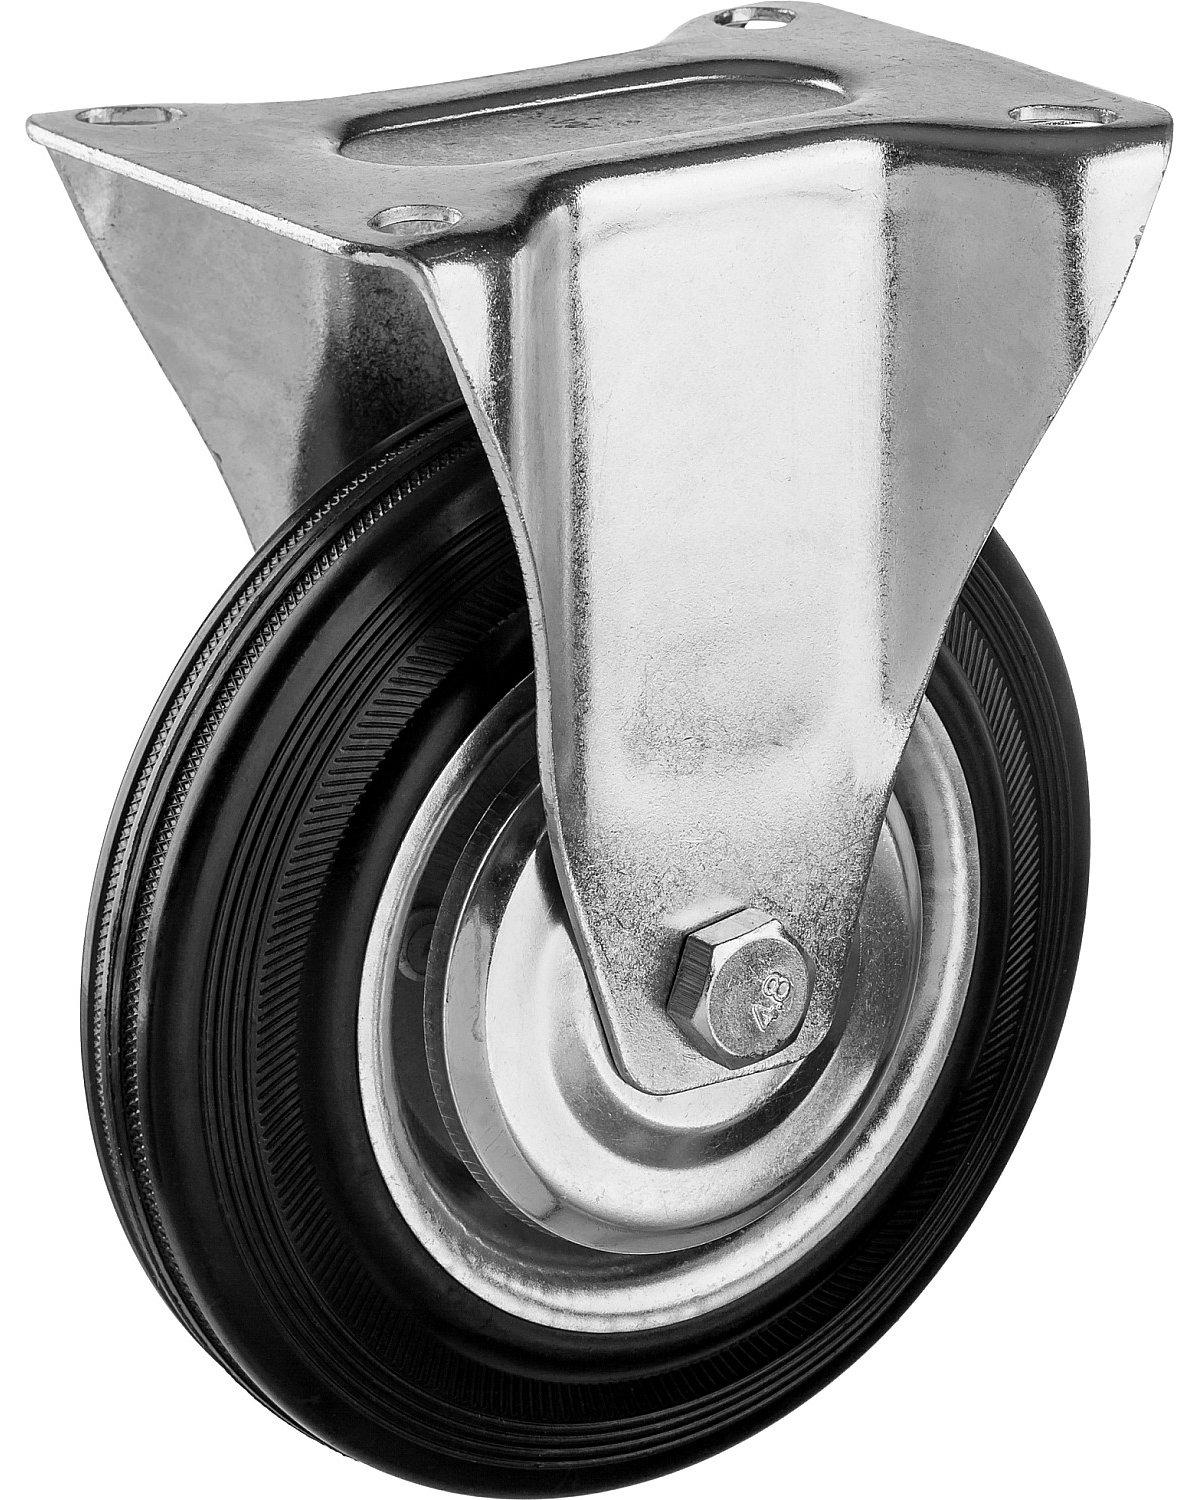 Неповоротное колесо резина металл игольчатый подшипник ЗУБР Профессионал d 160 мм г п 145 кг (30936-160-F)